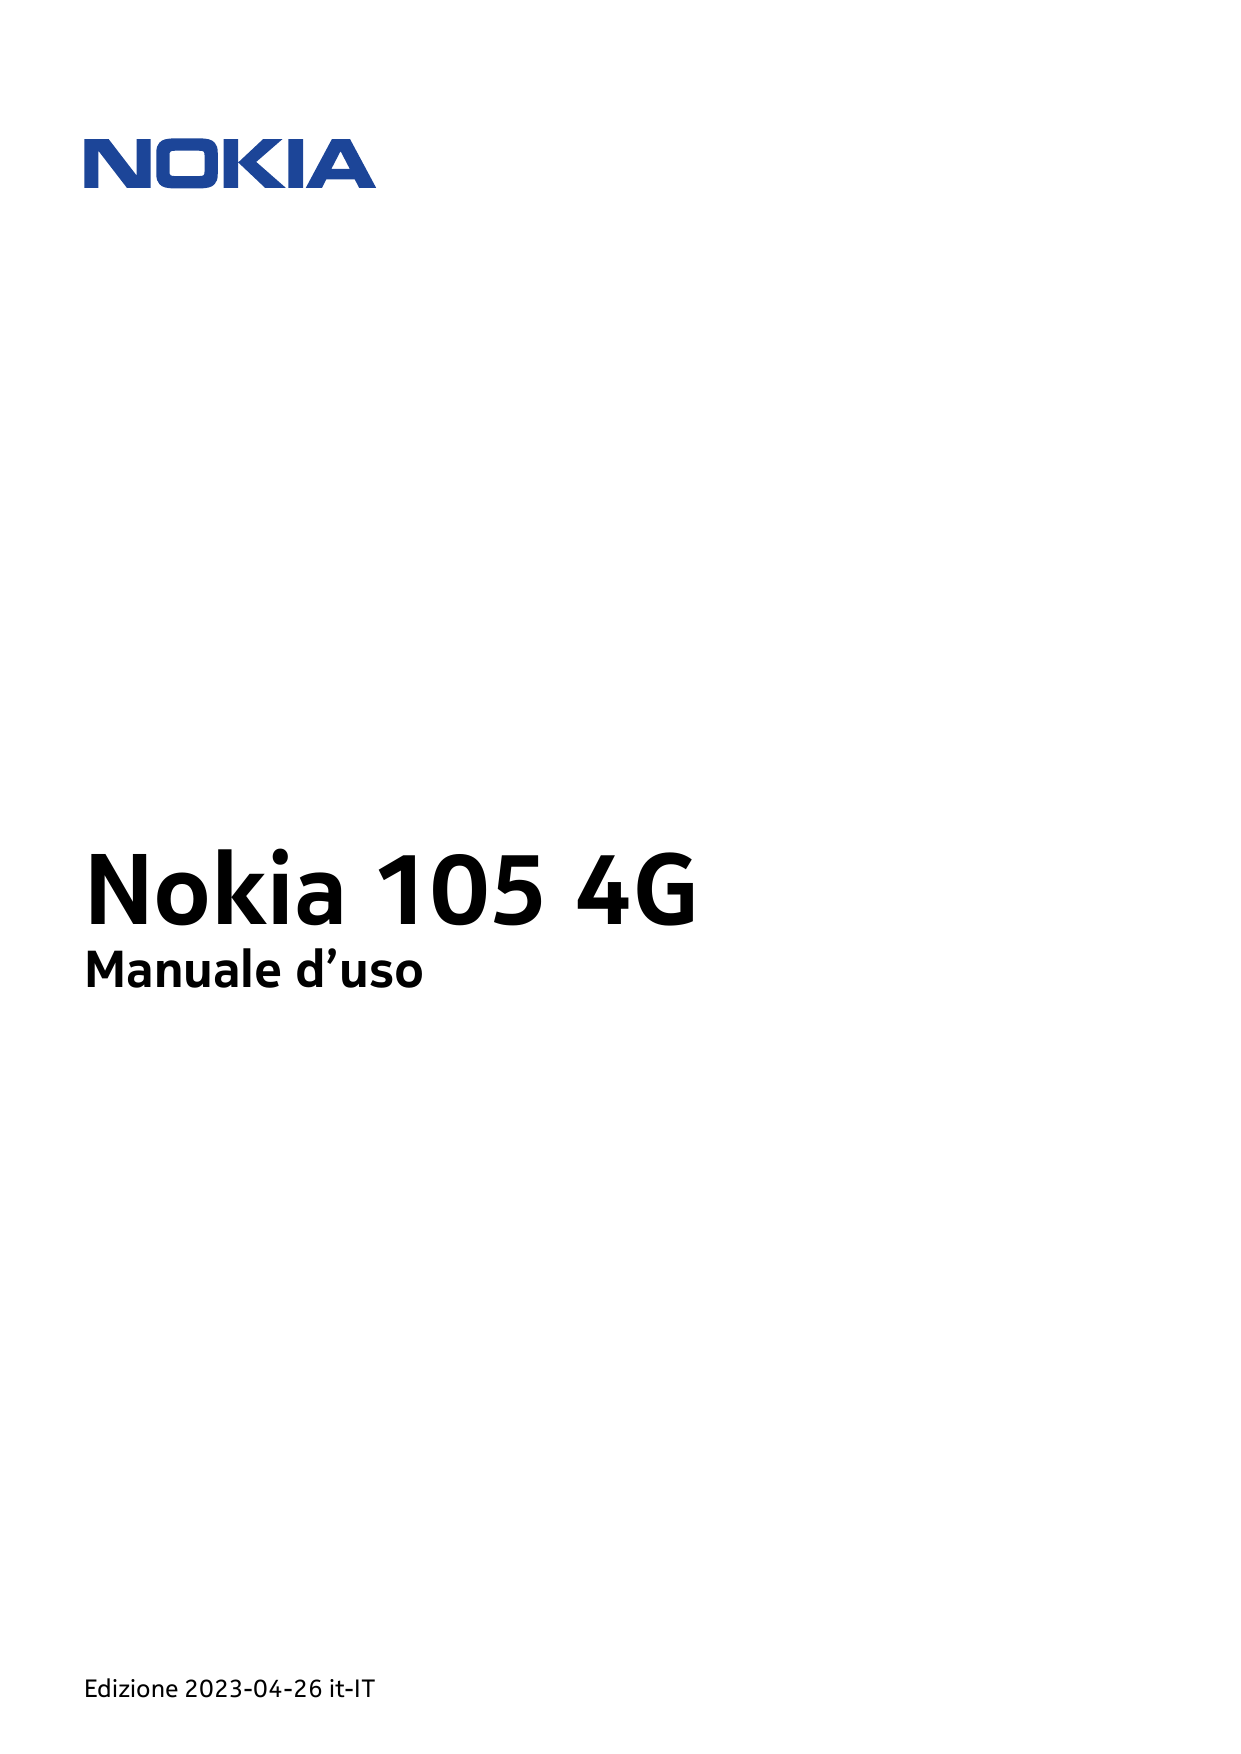 Nokia 105 4GManuale d’usoEdizione 2023-04-26 it-IT